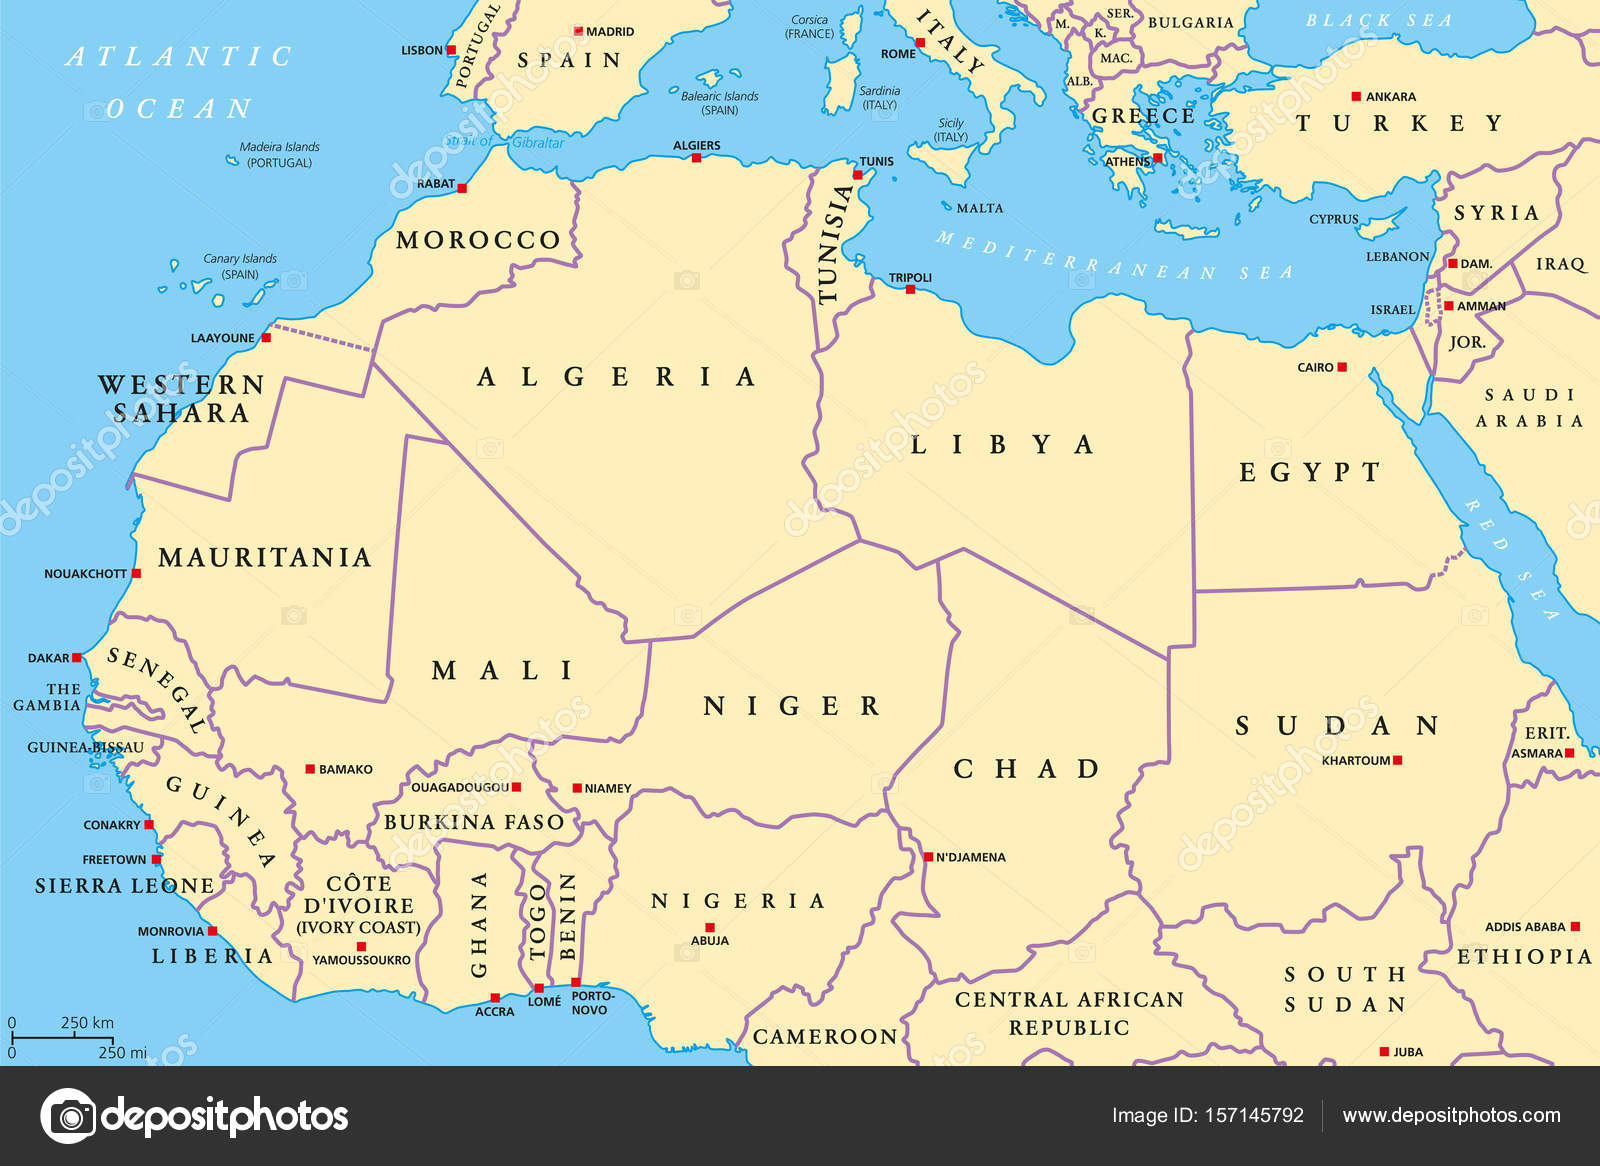 észak afrika térkép Észak afrikai országok politikai térképe — Stock Vektor © Furian  észak afrika térkép